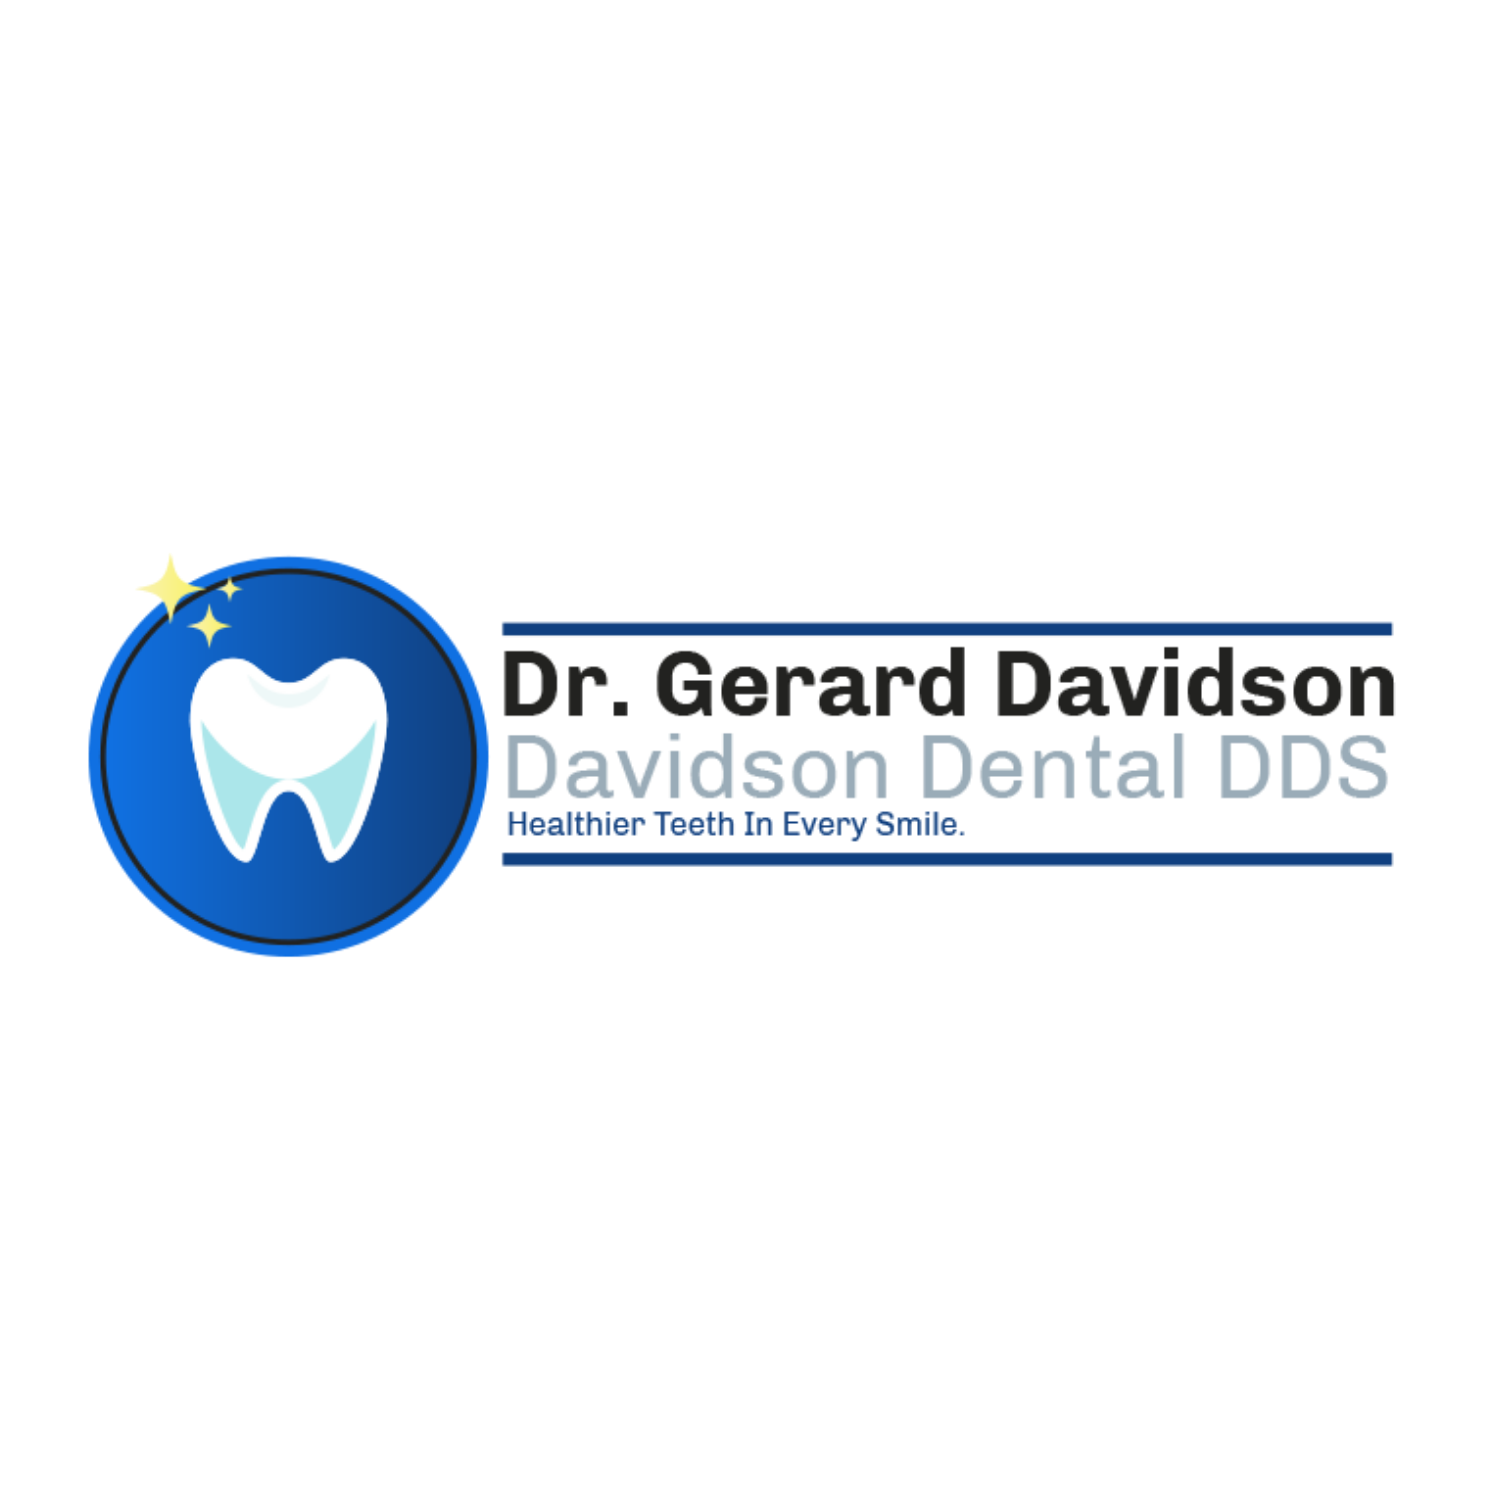 Davidson Dental DDS